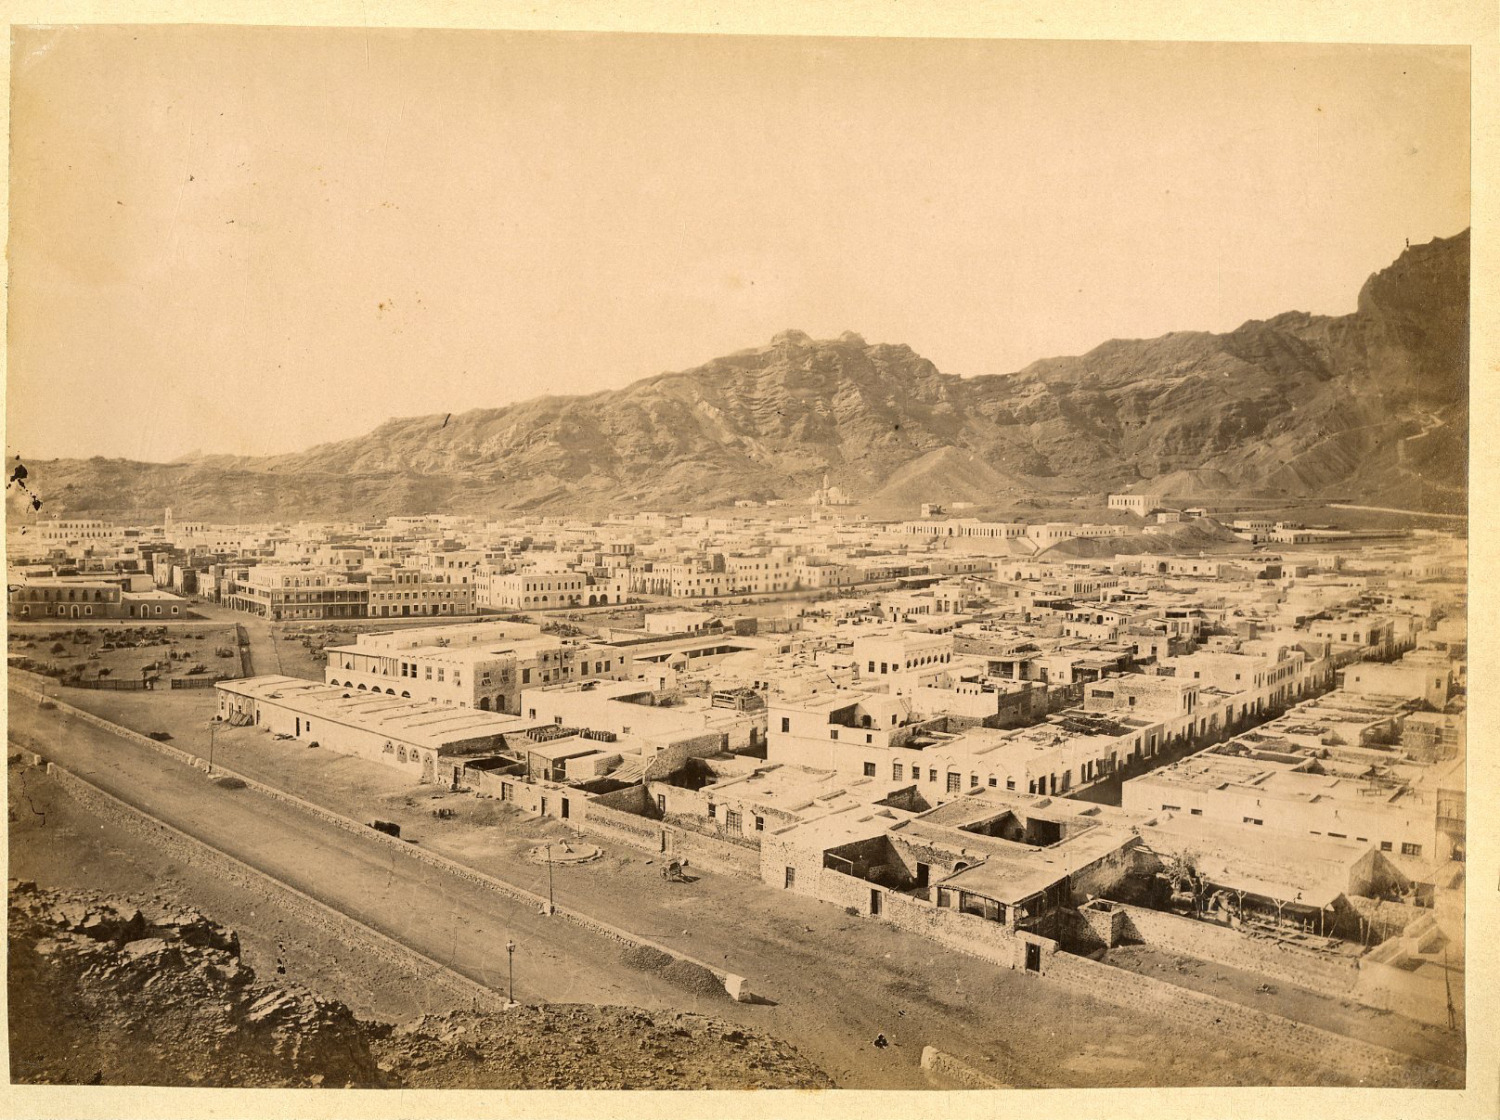 Yemen, Aden, Panorama Vintage Albumen Print.  Circ 18x24 Albumin Print